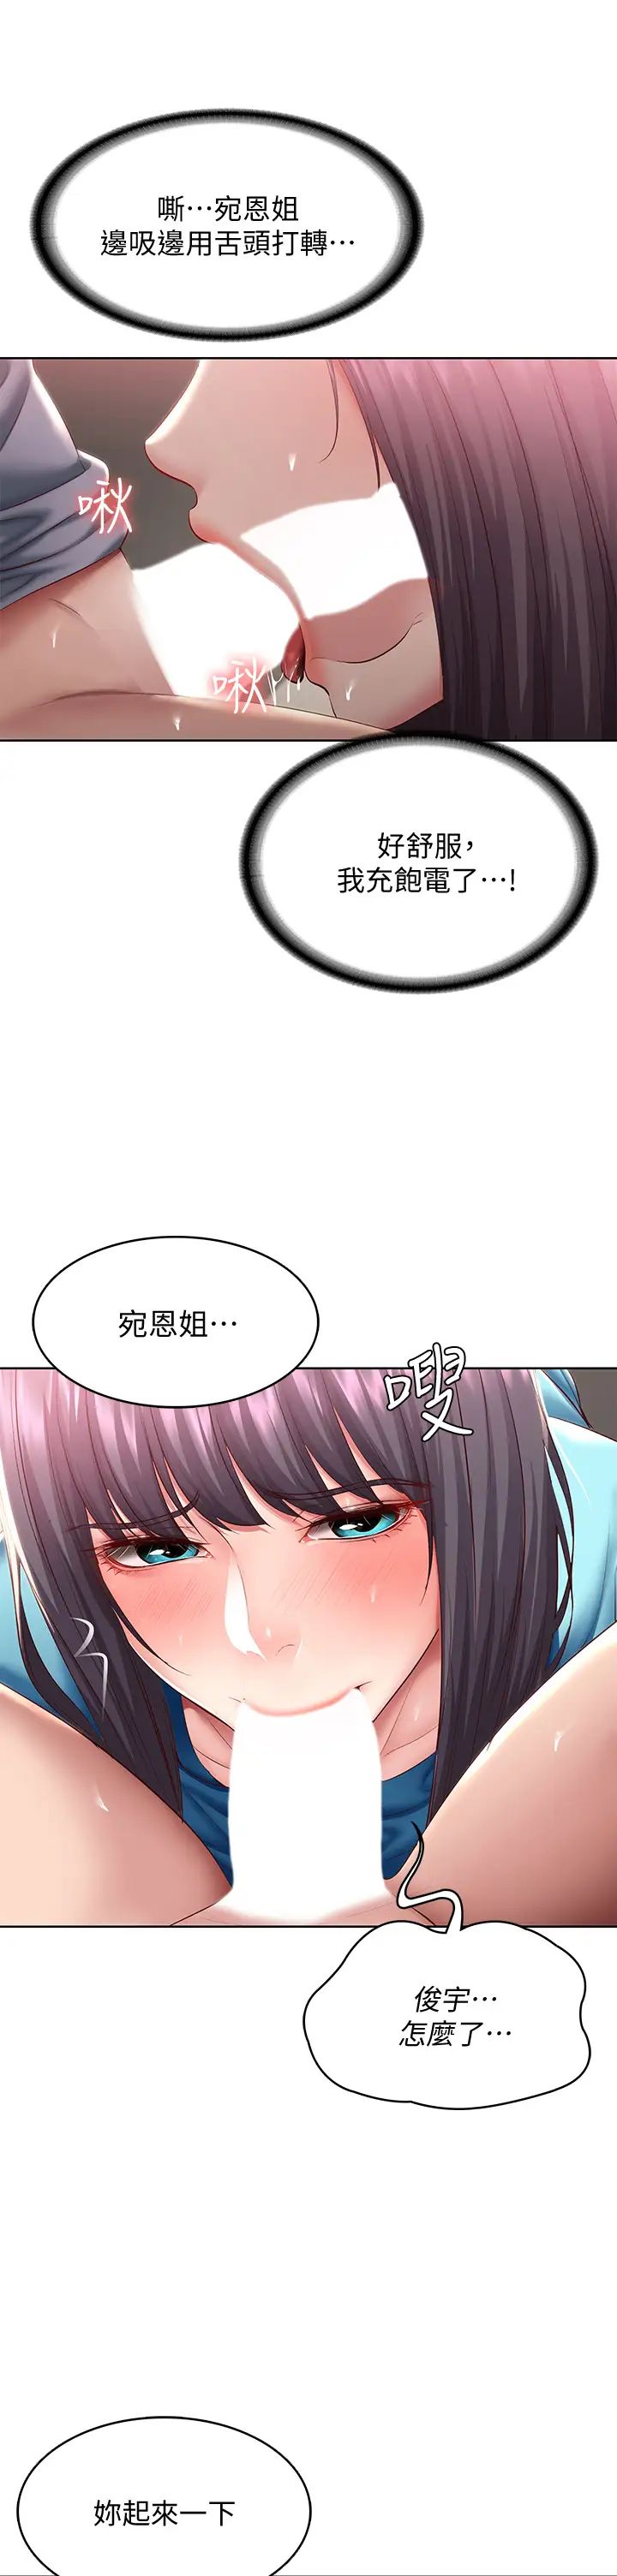 韩国污漫画 寄宿日記 第83话用深喉咙帮俊宇充电 29